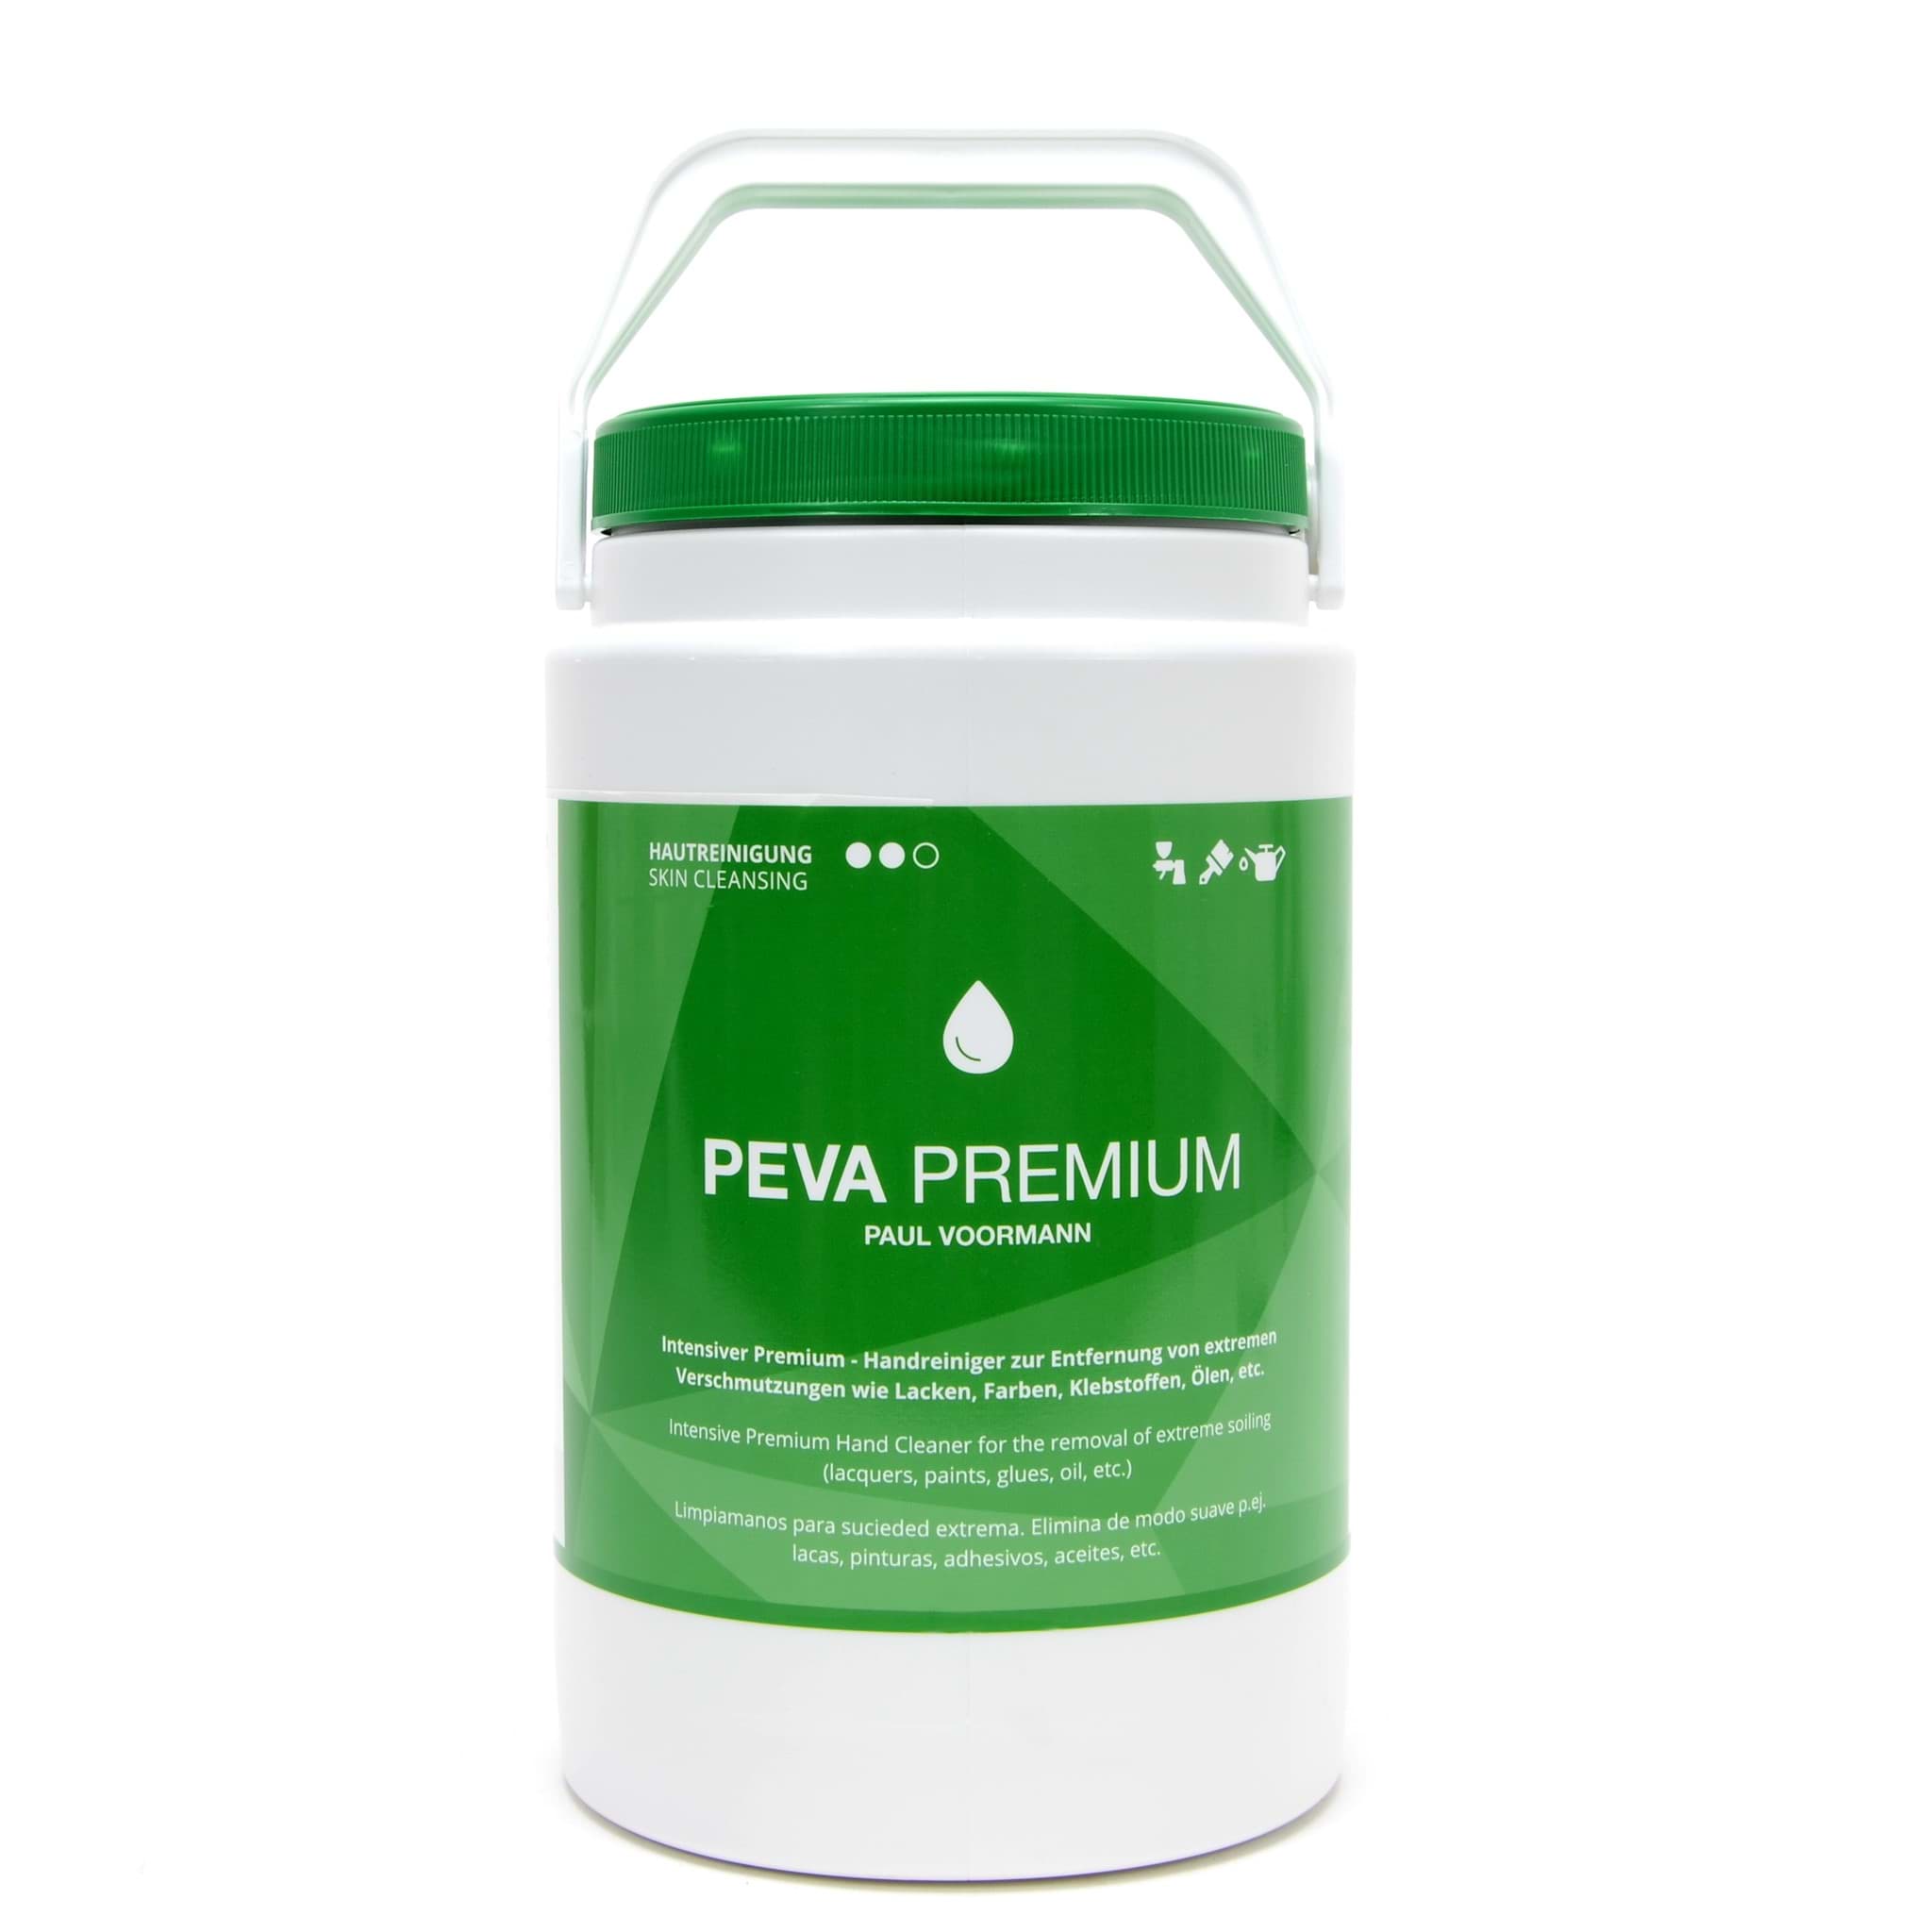 Bild von Peva Premium Handreiniger 3 Liter